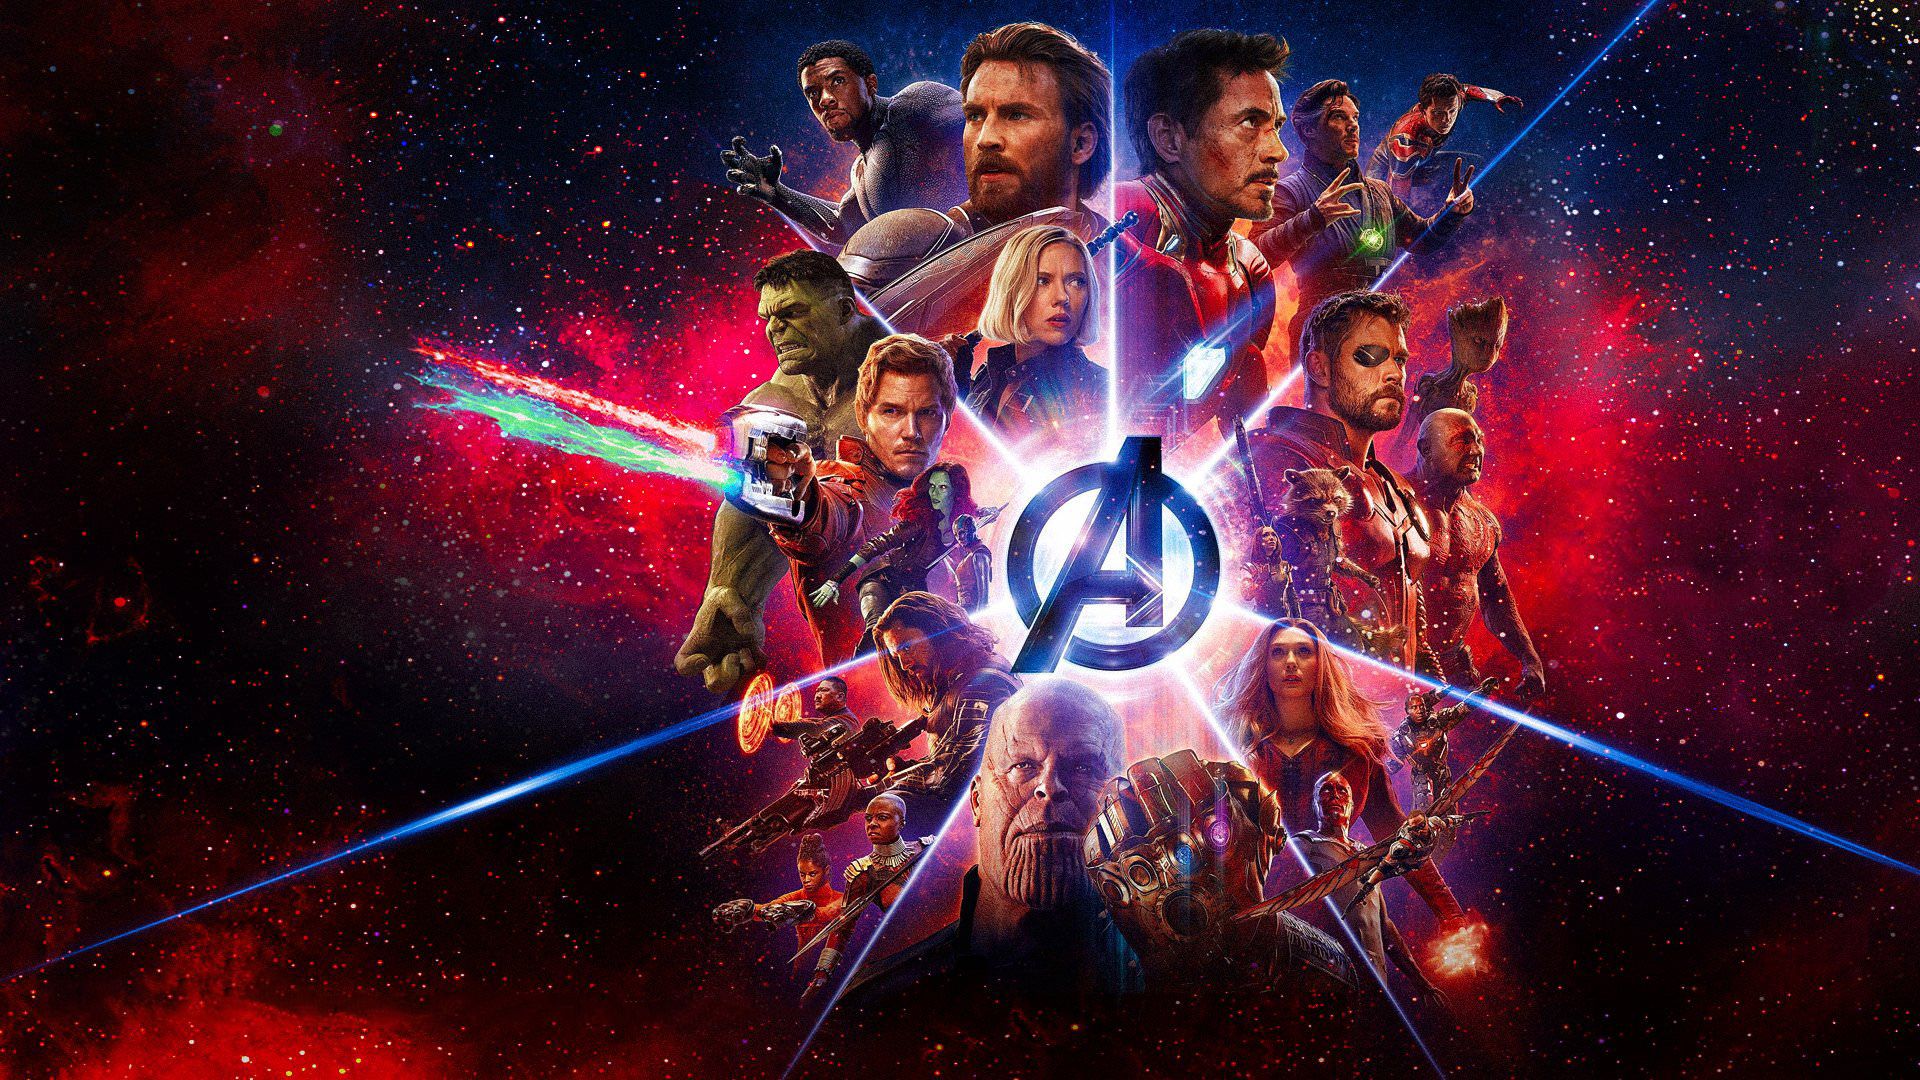 Avengers Infinity War Movie Imax Poster Endgame